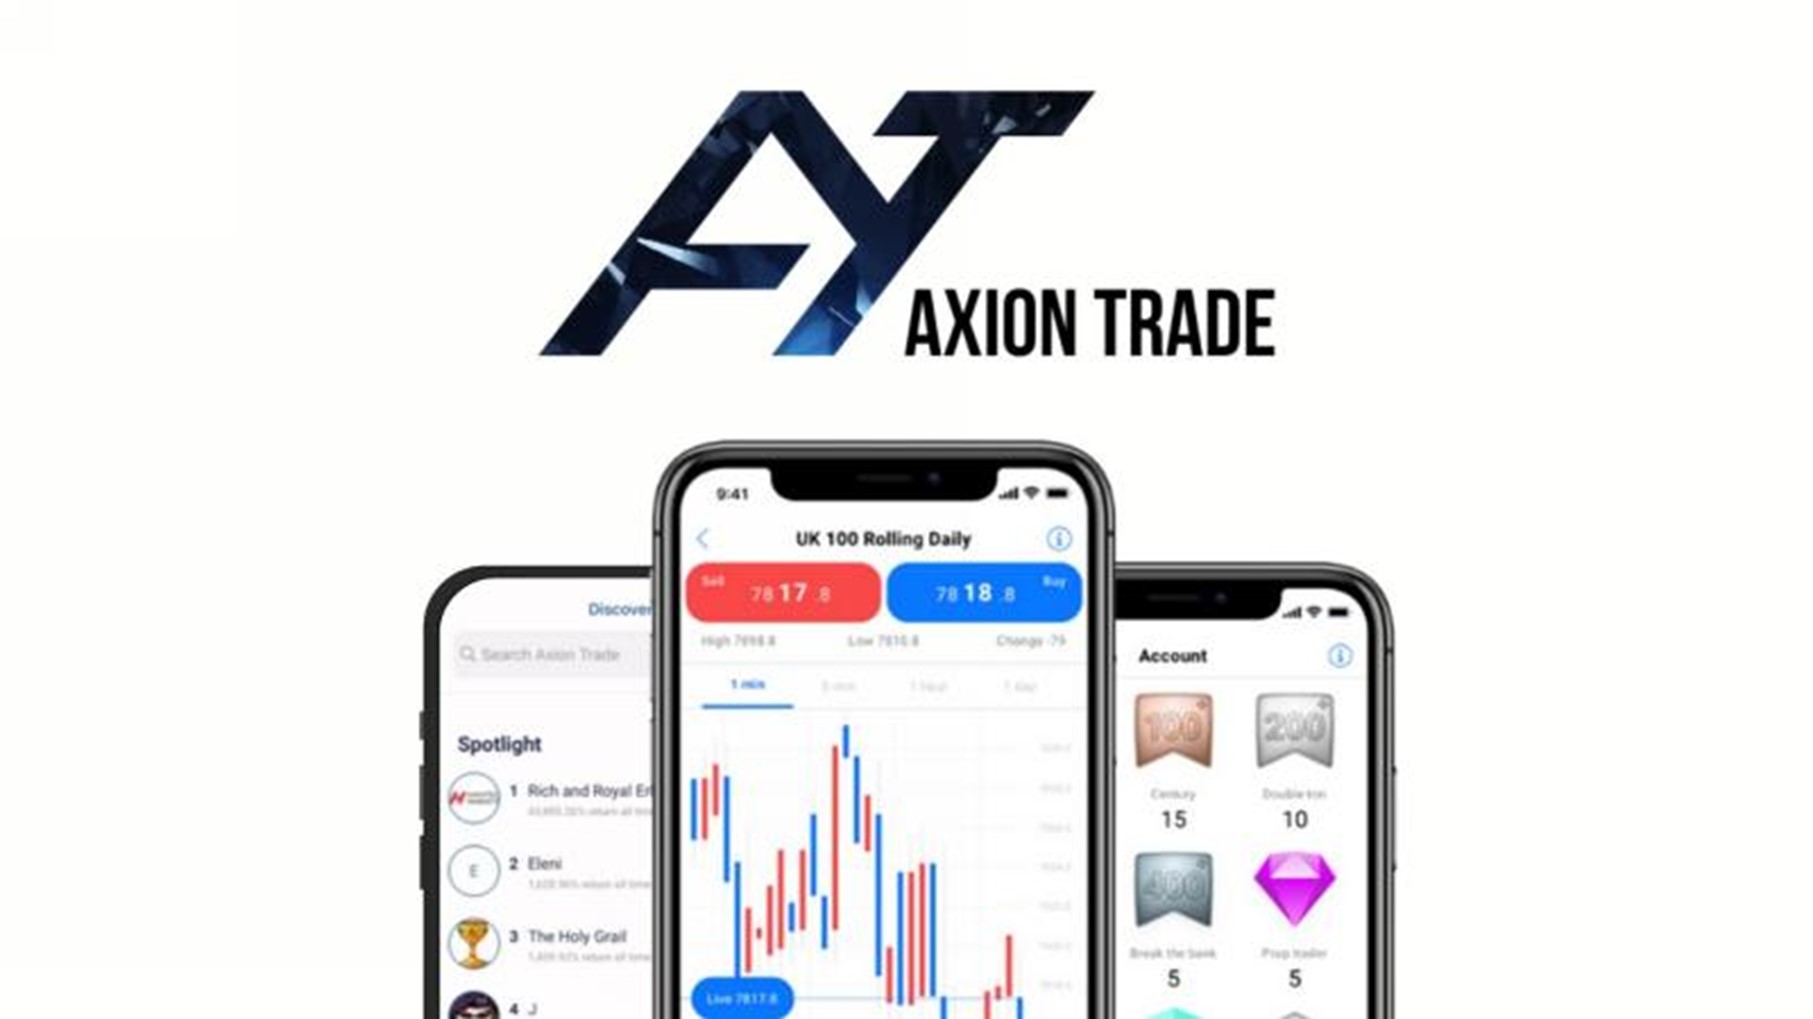 Axion Trade Launches Social Trading App Axion Mirror